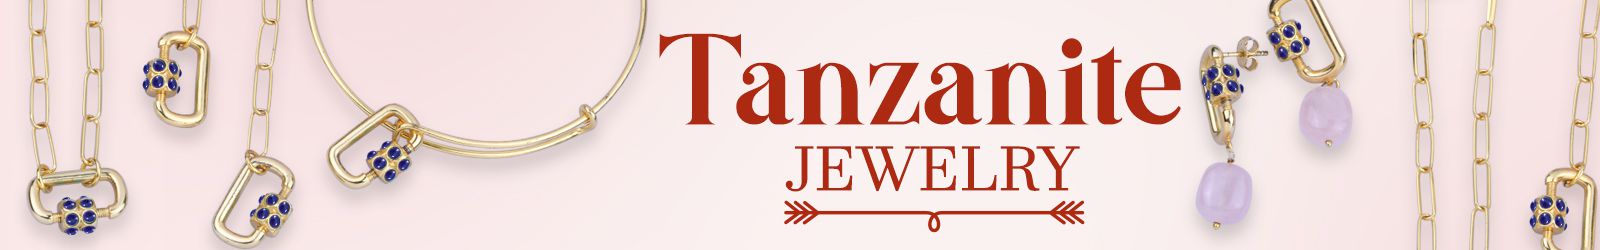 Silver Tanzanite Jewelry Wholesale Supplier